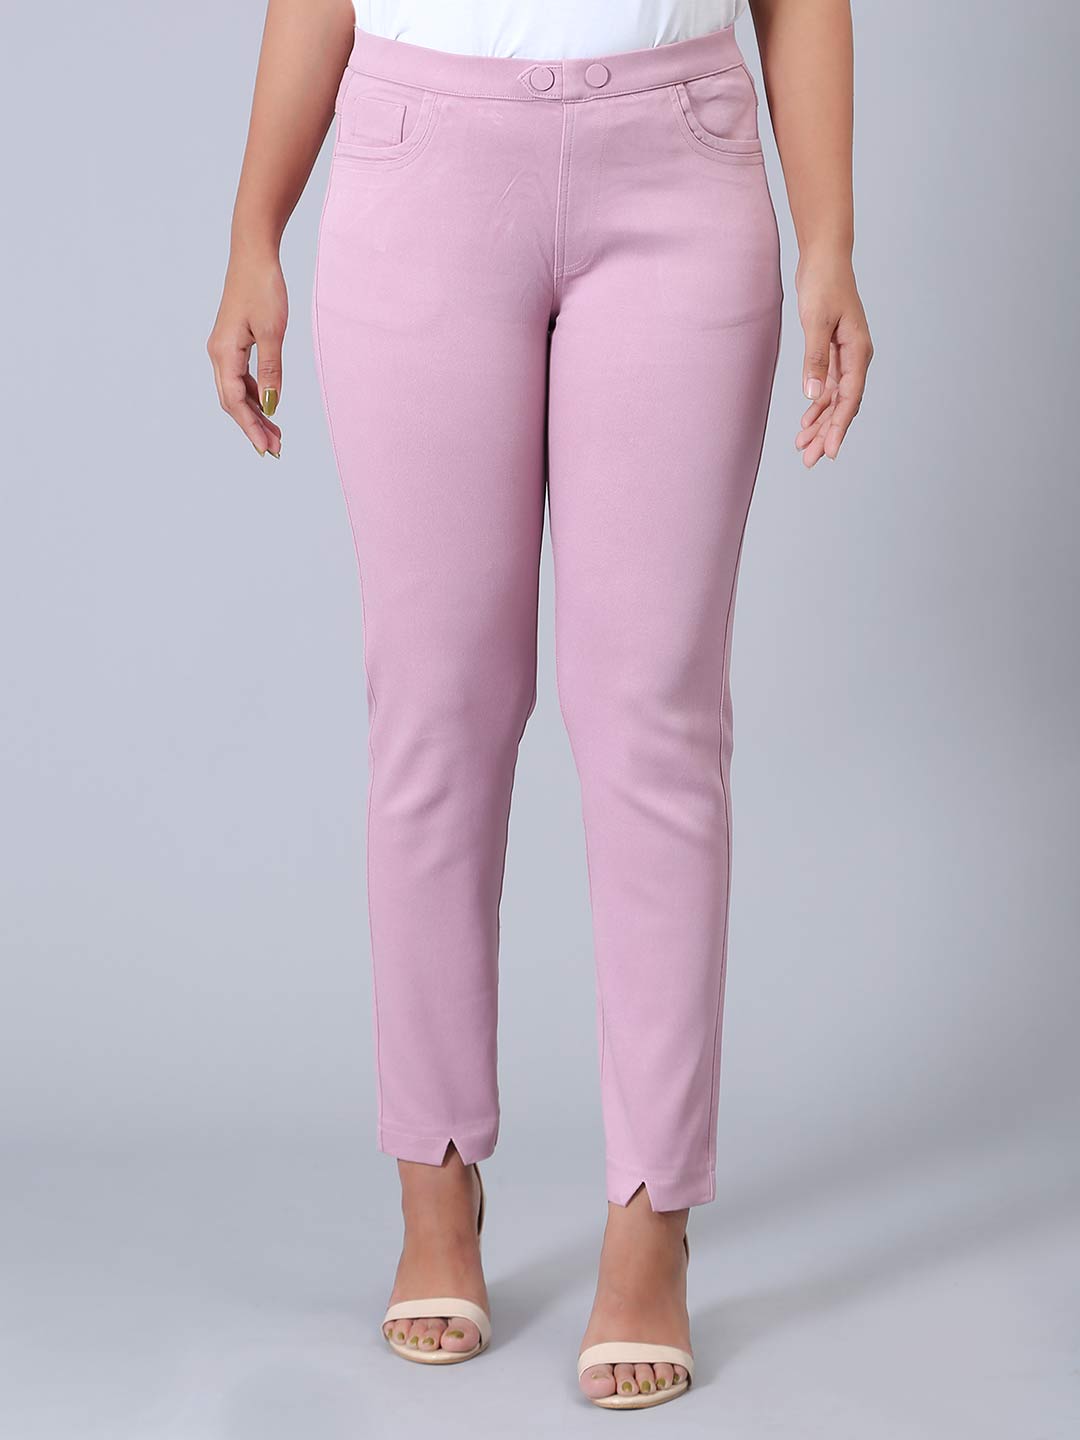 Women's Pink Jeggings Jeans